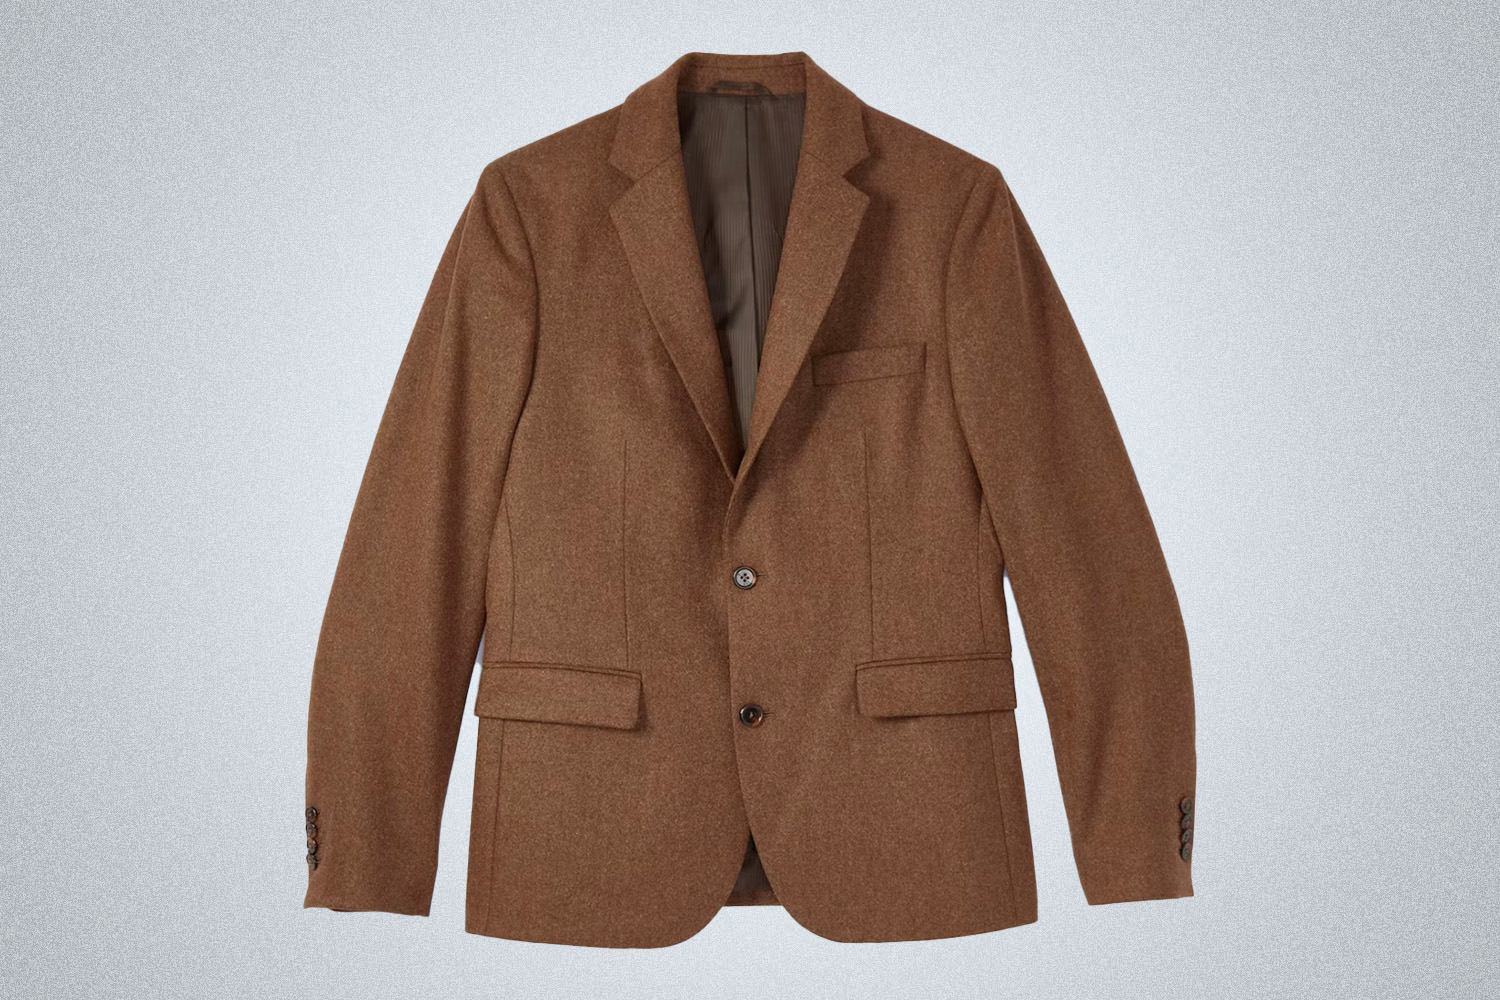 a brown Wills travel blazer on a grey background